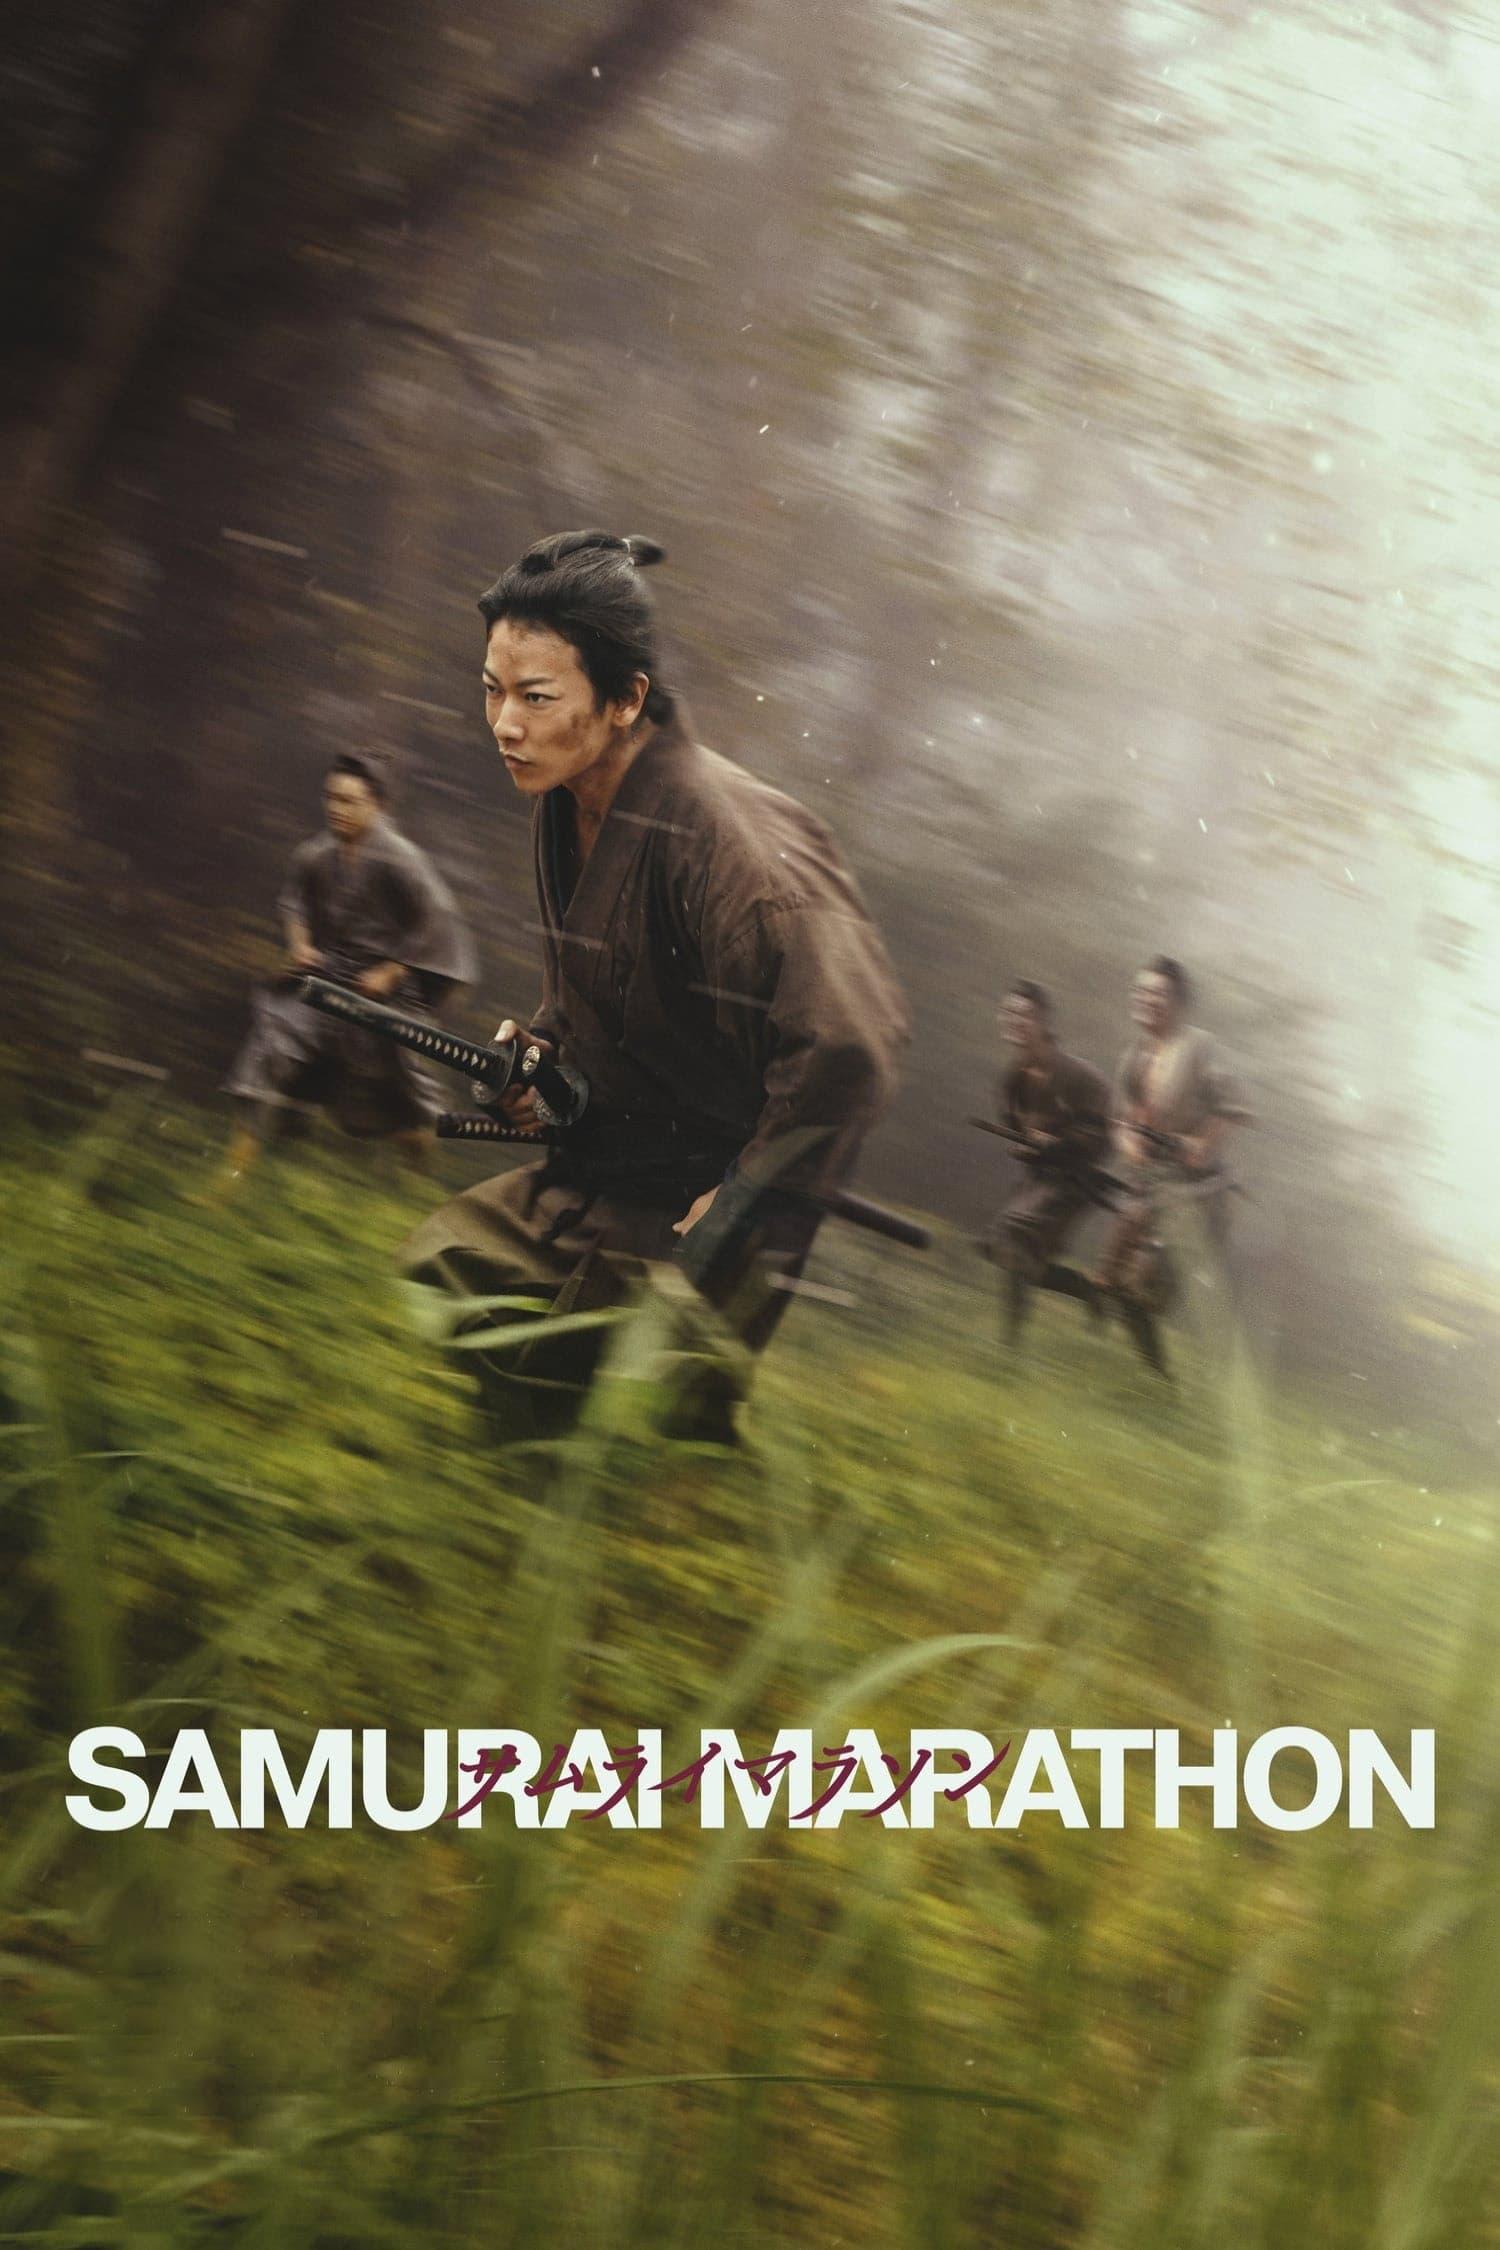 Samurai Marathon poster